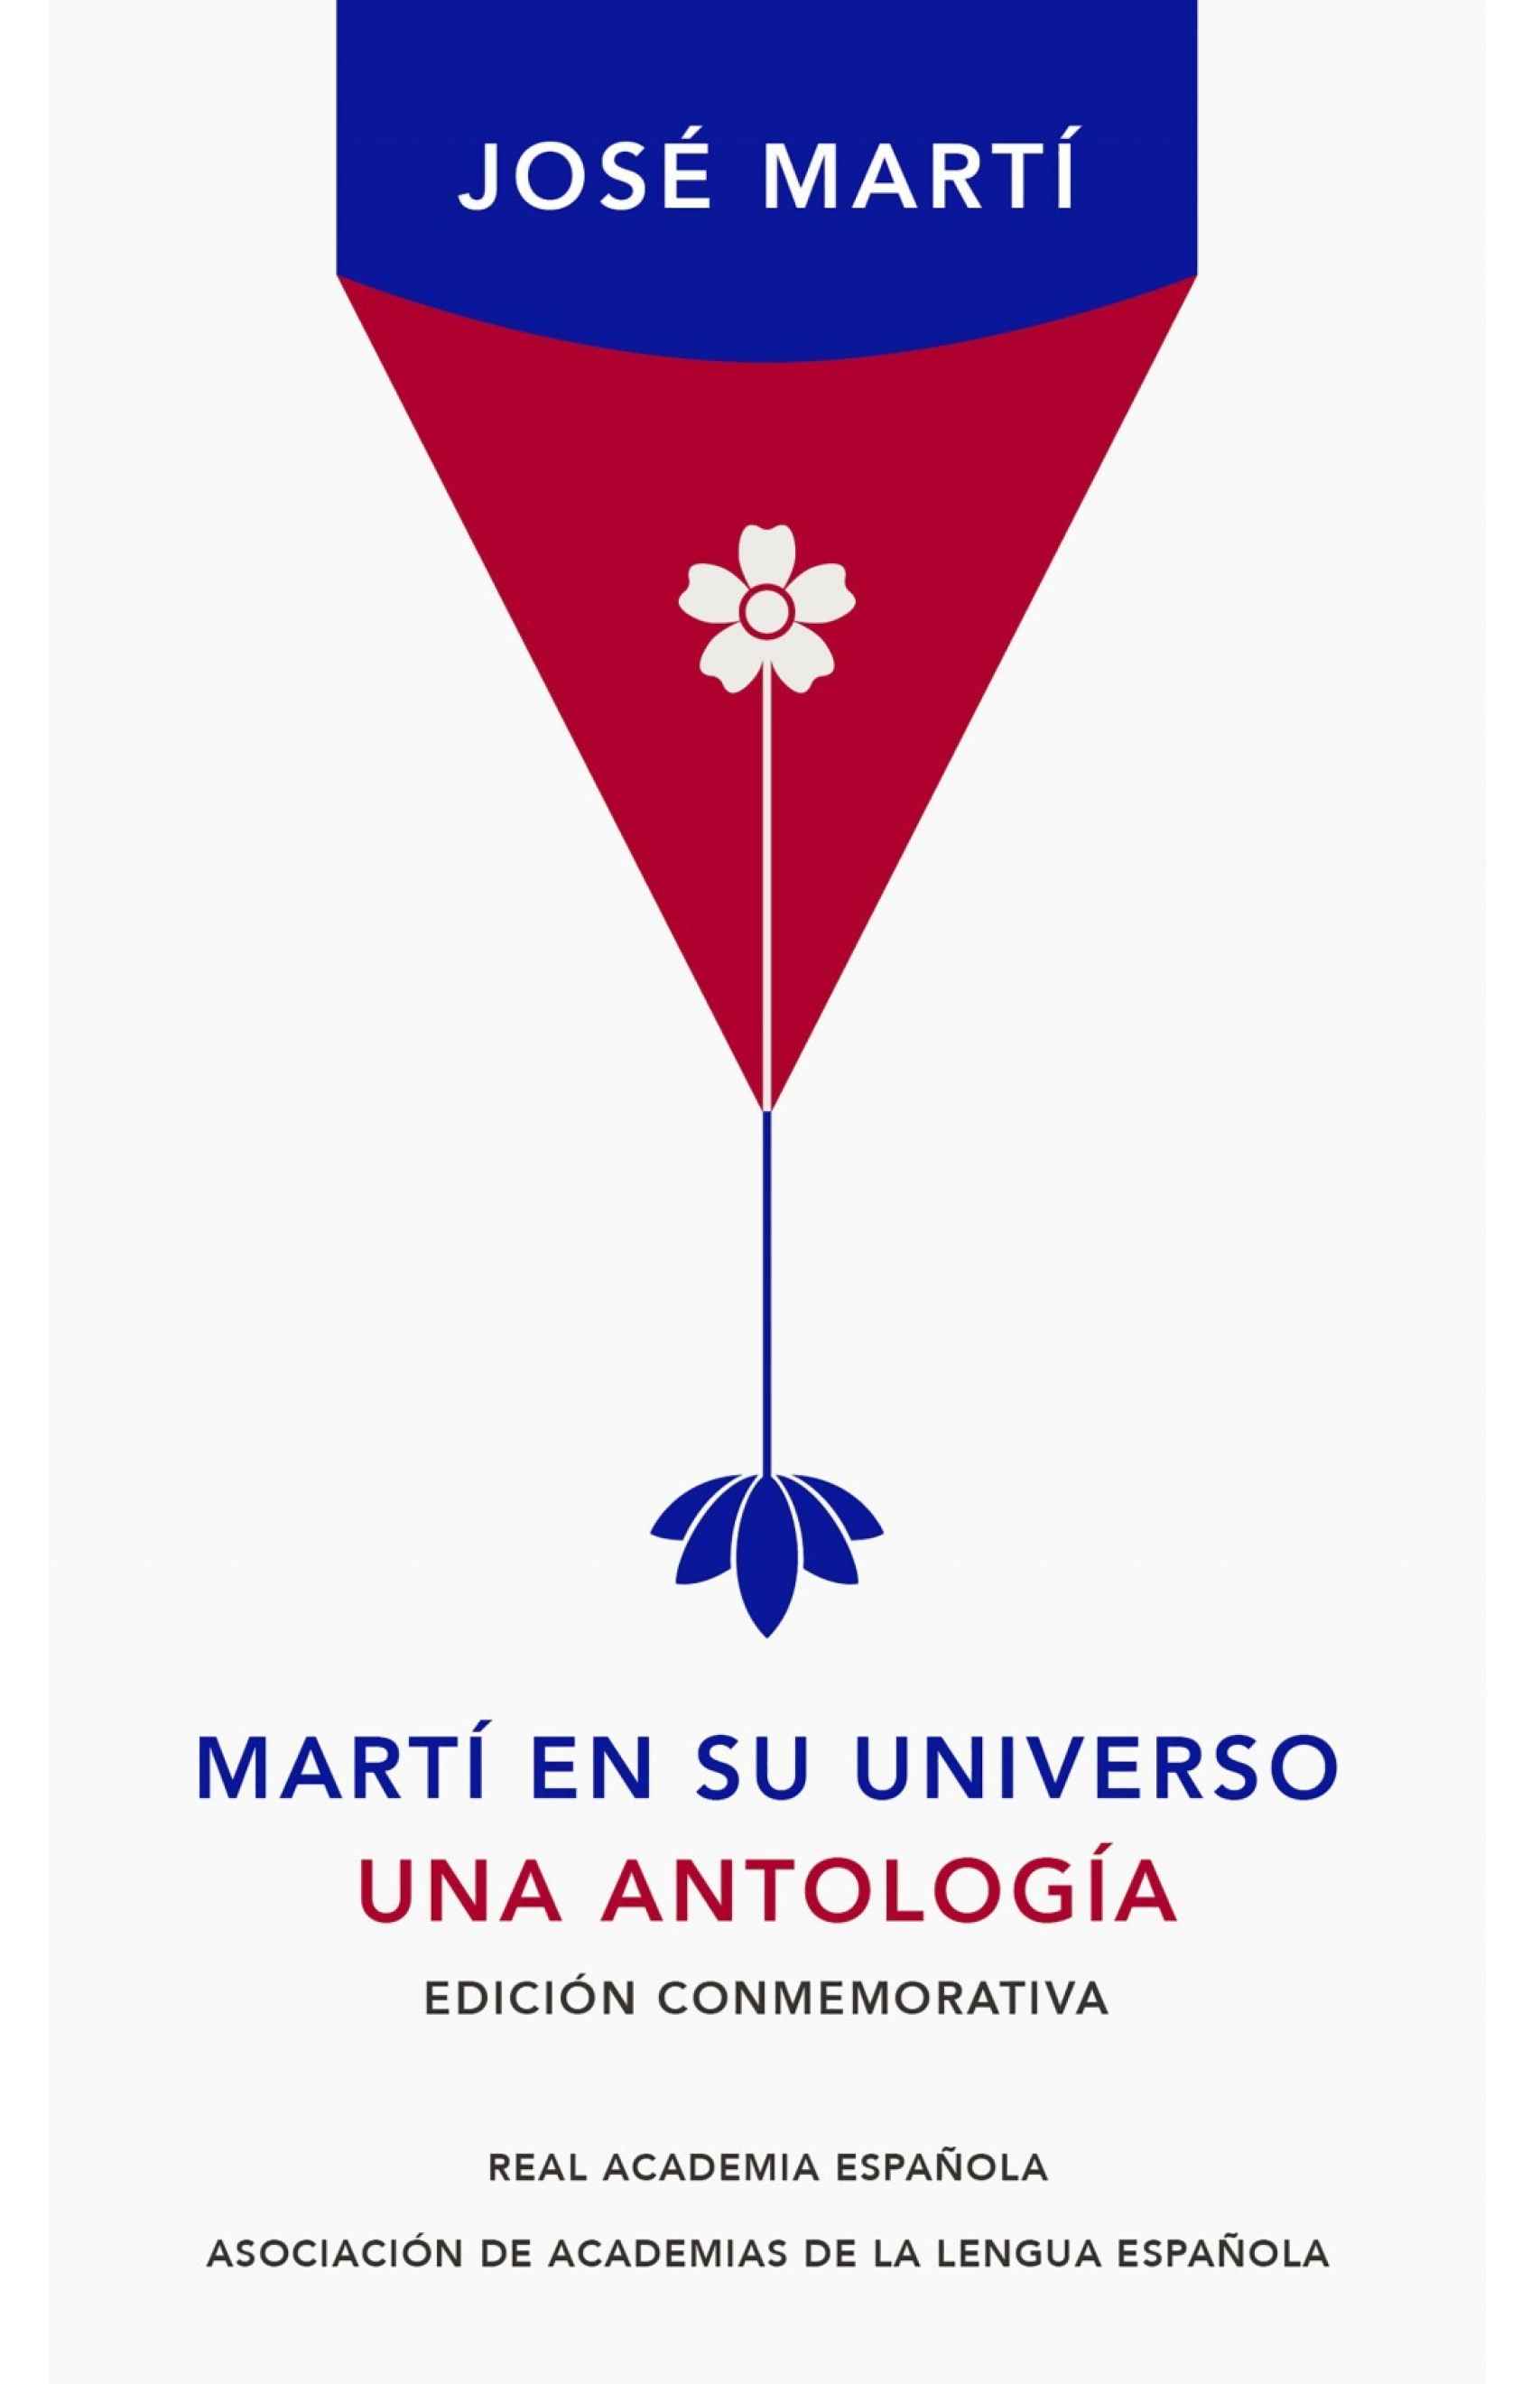 Portada de la edición conmemorativa de 'Martí en su universo' (Alfaguara).